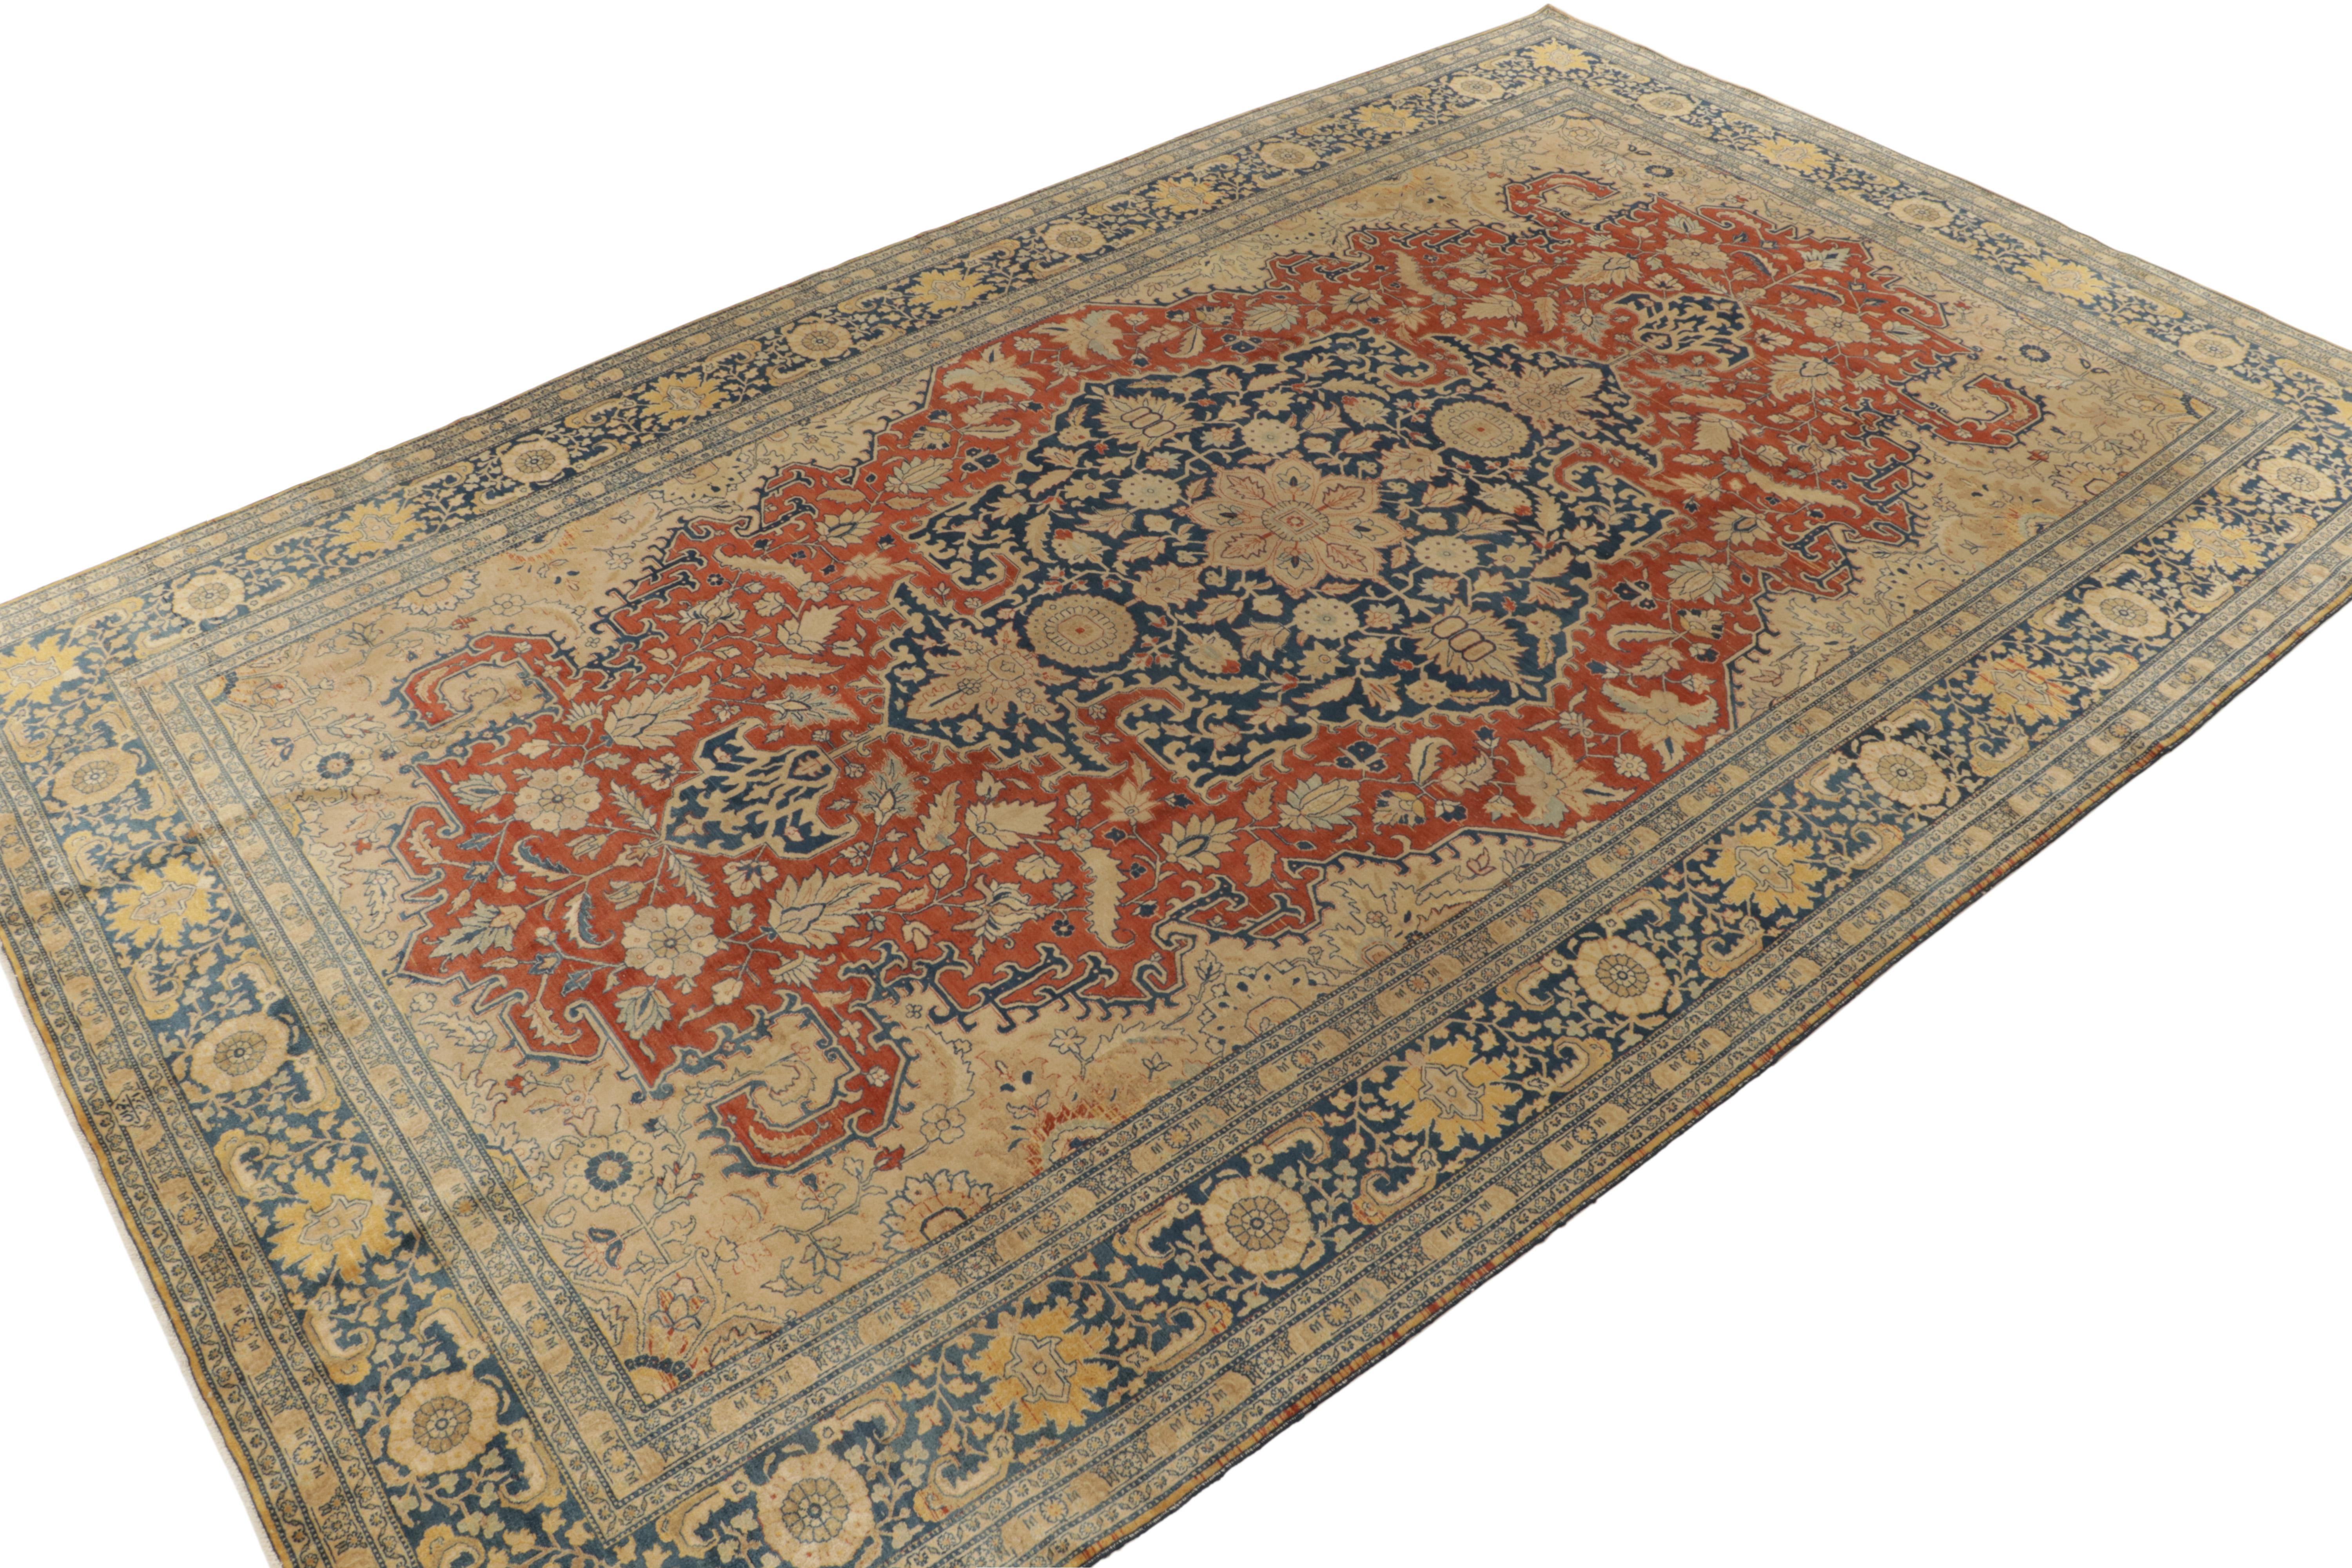 Persian Antique Tabriz rug in Orange Blue, Beige Floral Medallion Pattern by Rug & Kilim For Sale